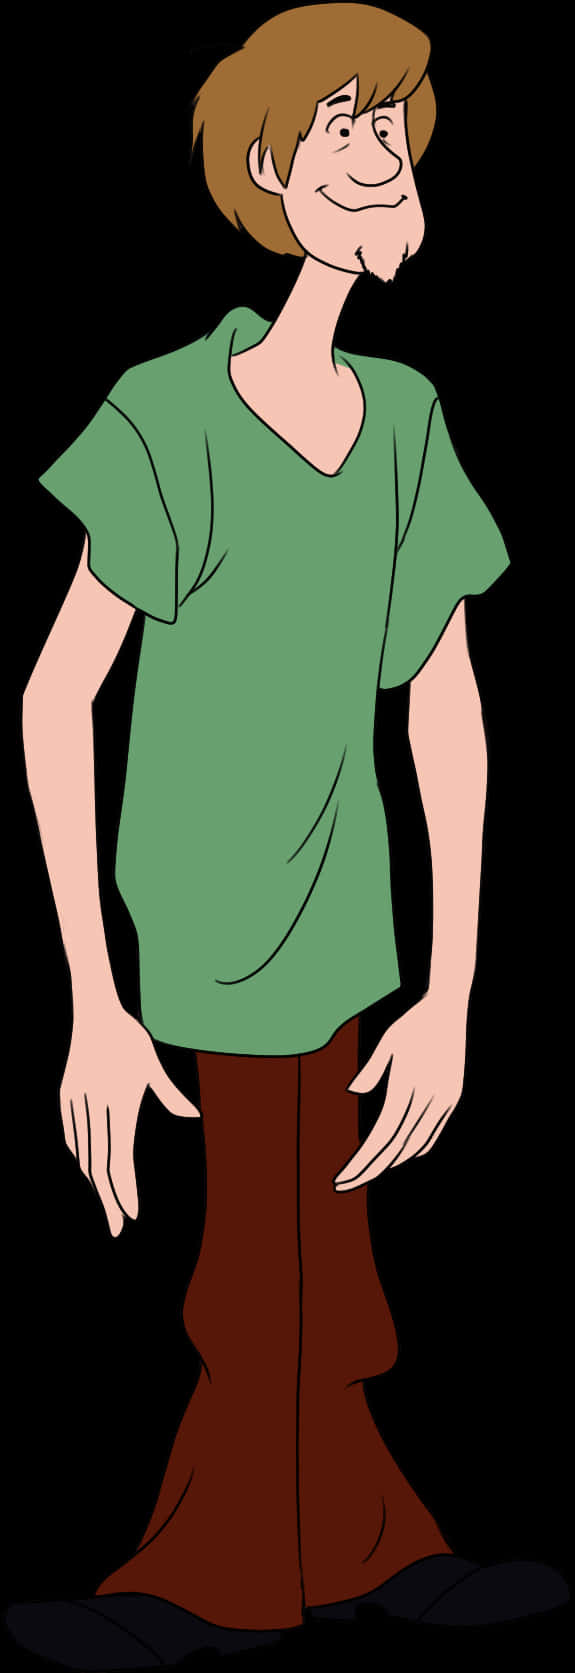 Shaggyrogers, Ein Liebenswertes Teammitglied Von Scooby Doo. Wallpaper